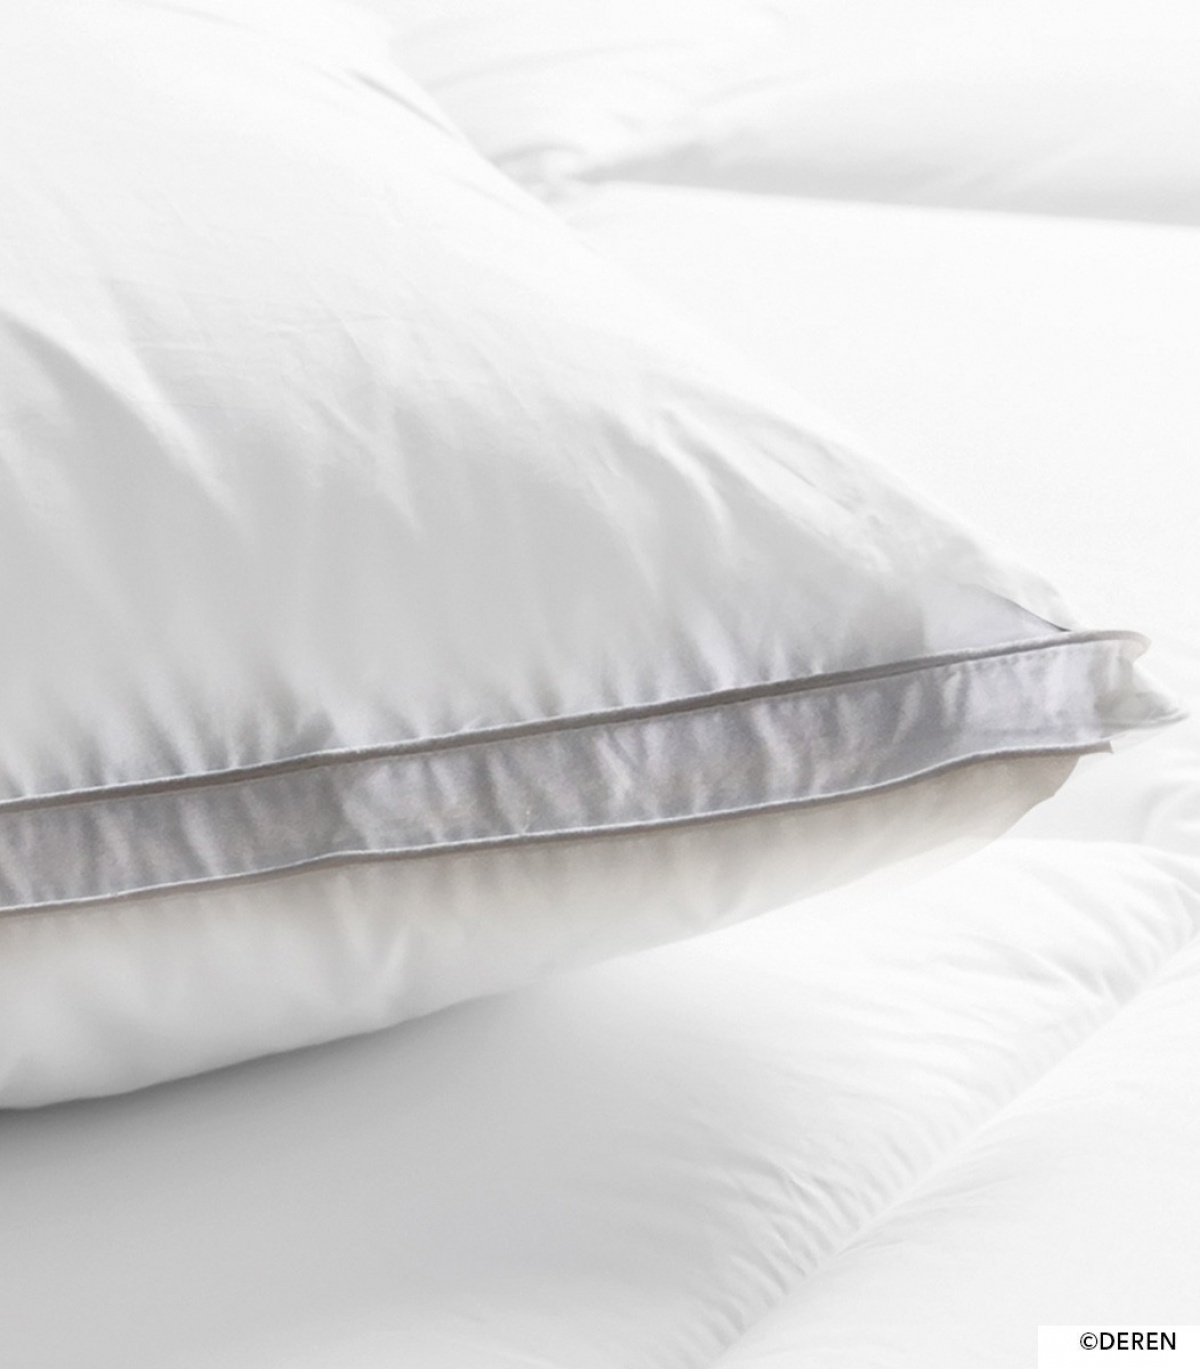 L'oreiller ultra-confort DEREN, l'oreiller innovant de grande qualité